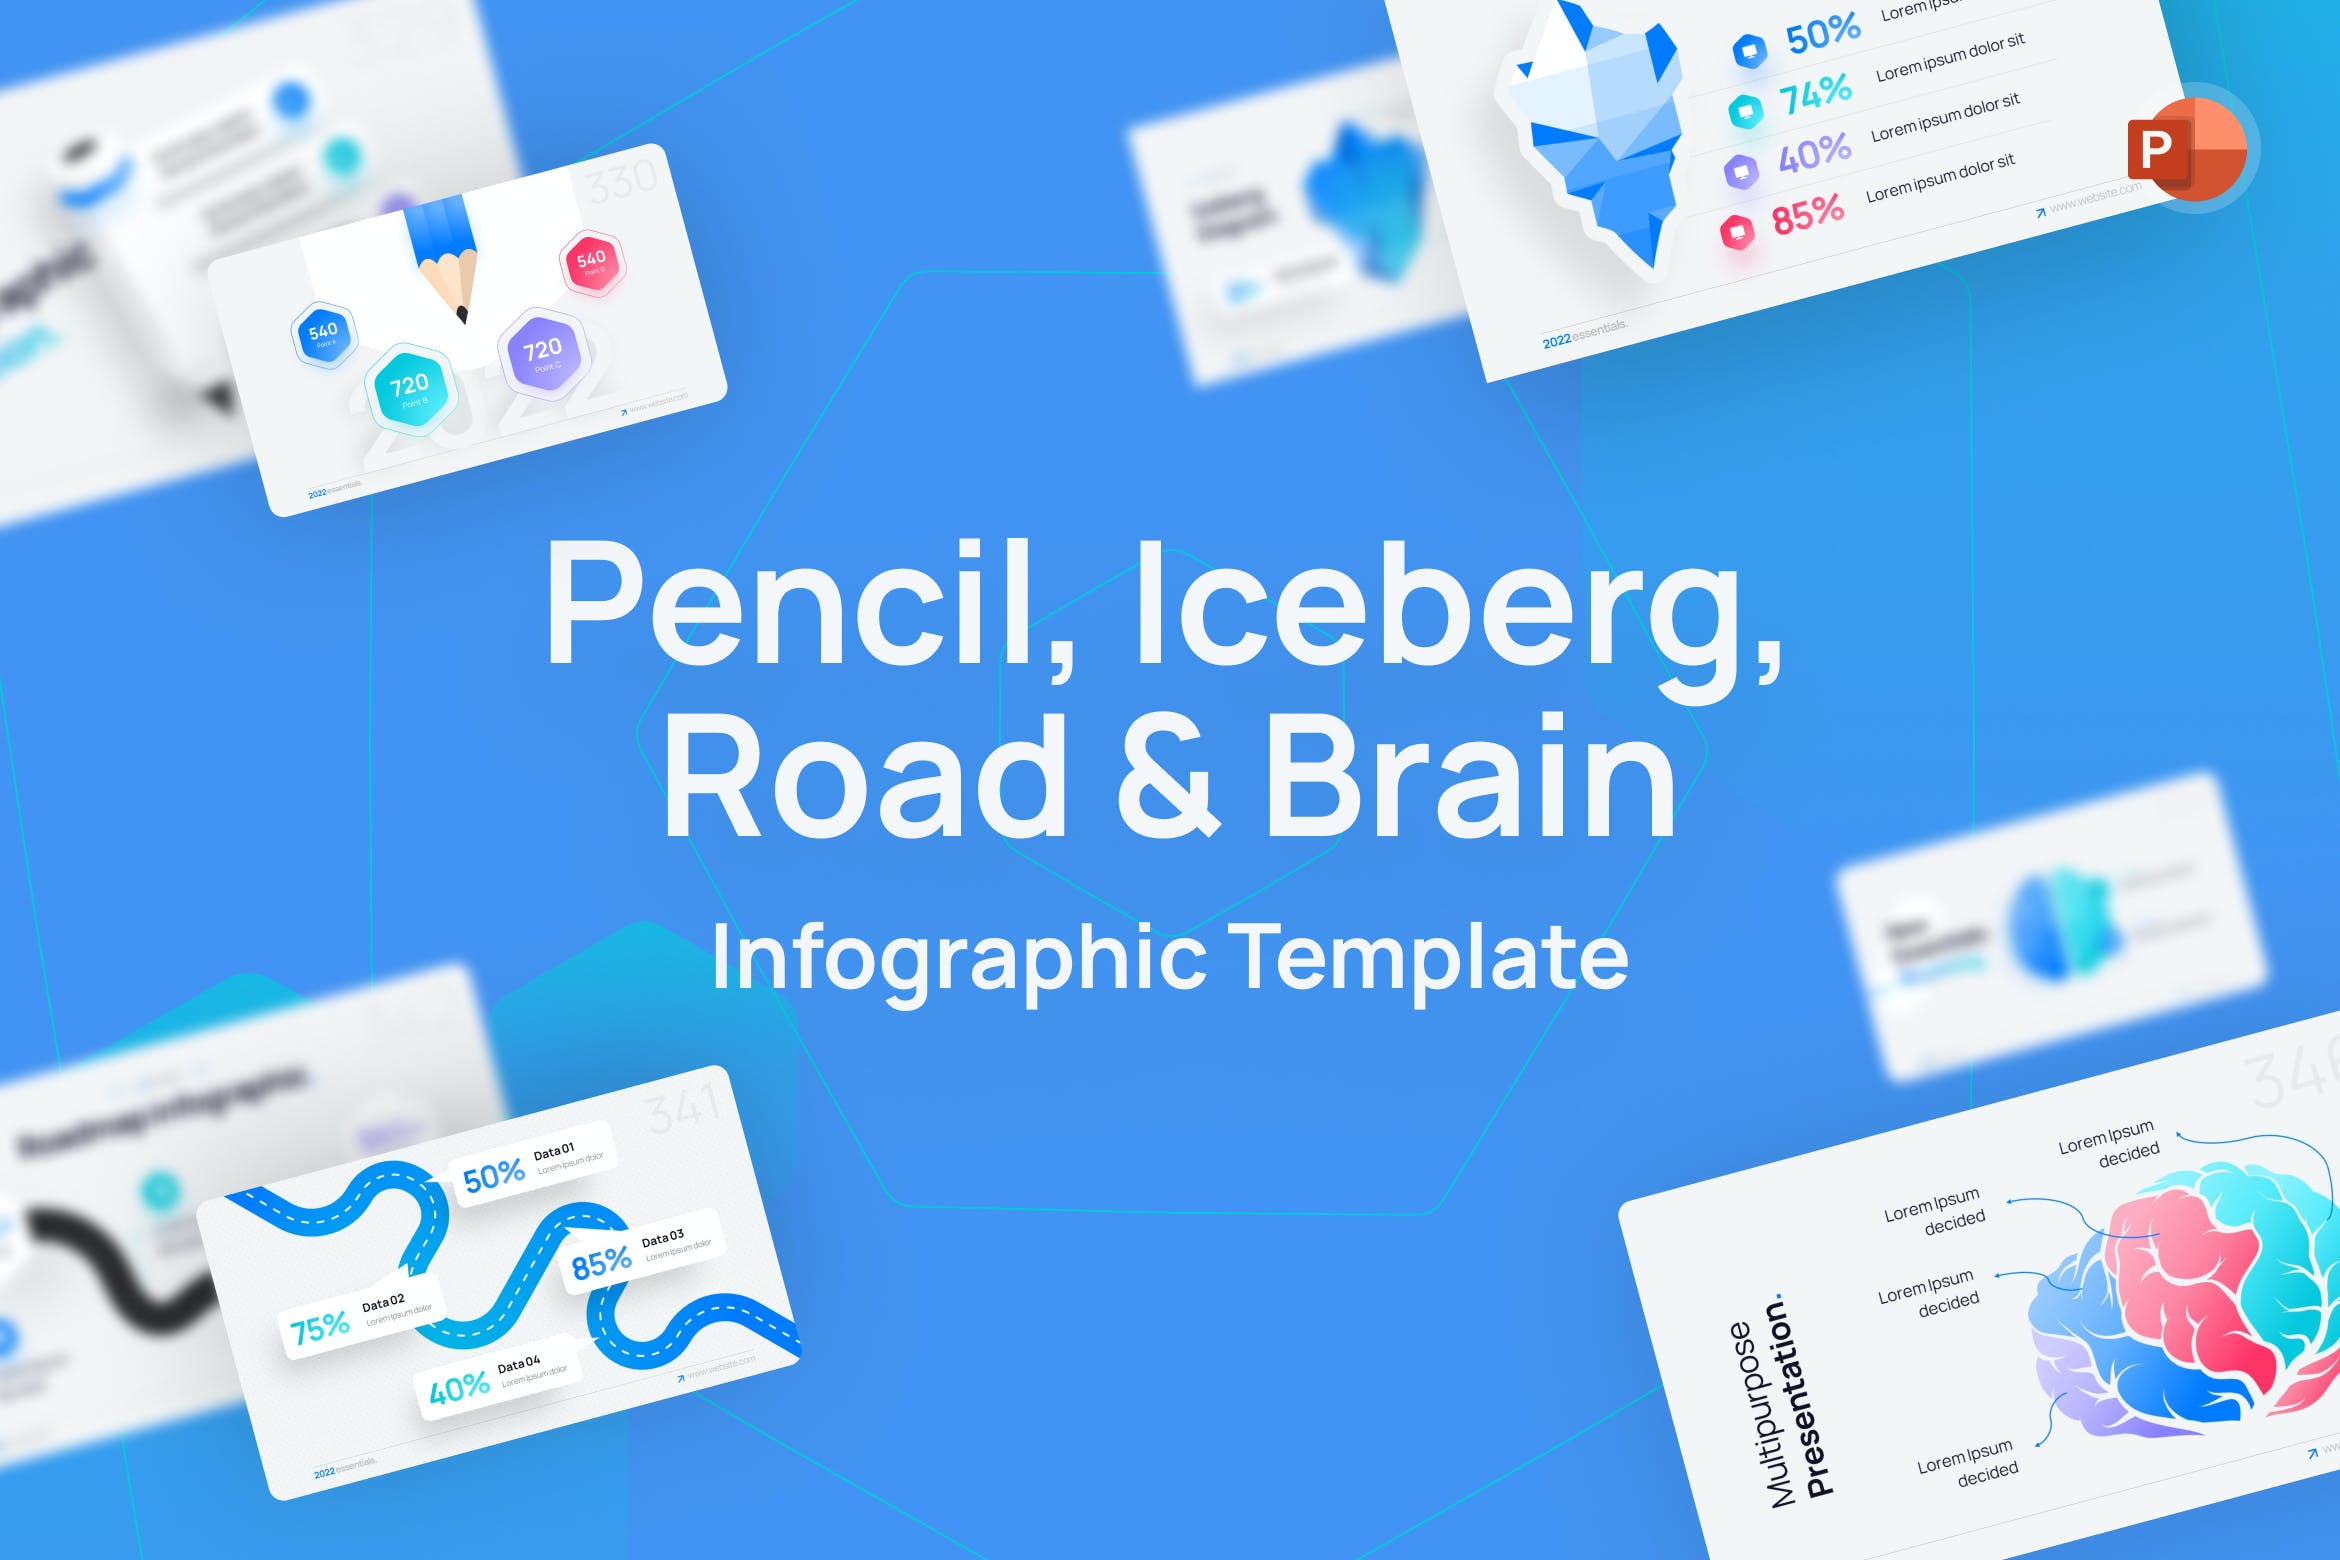 铅笔/冰山/道路和大脑图表PPT幻灯片模板下载 Pencil, Iceberg, Road & Brain PowerPoint Template 幻灯图表 第1张